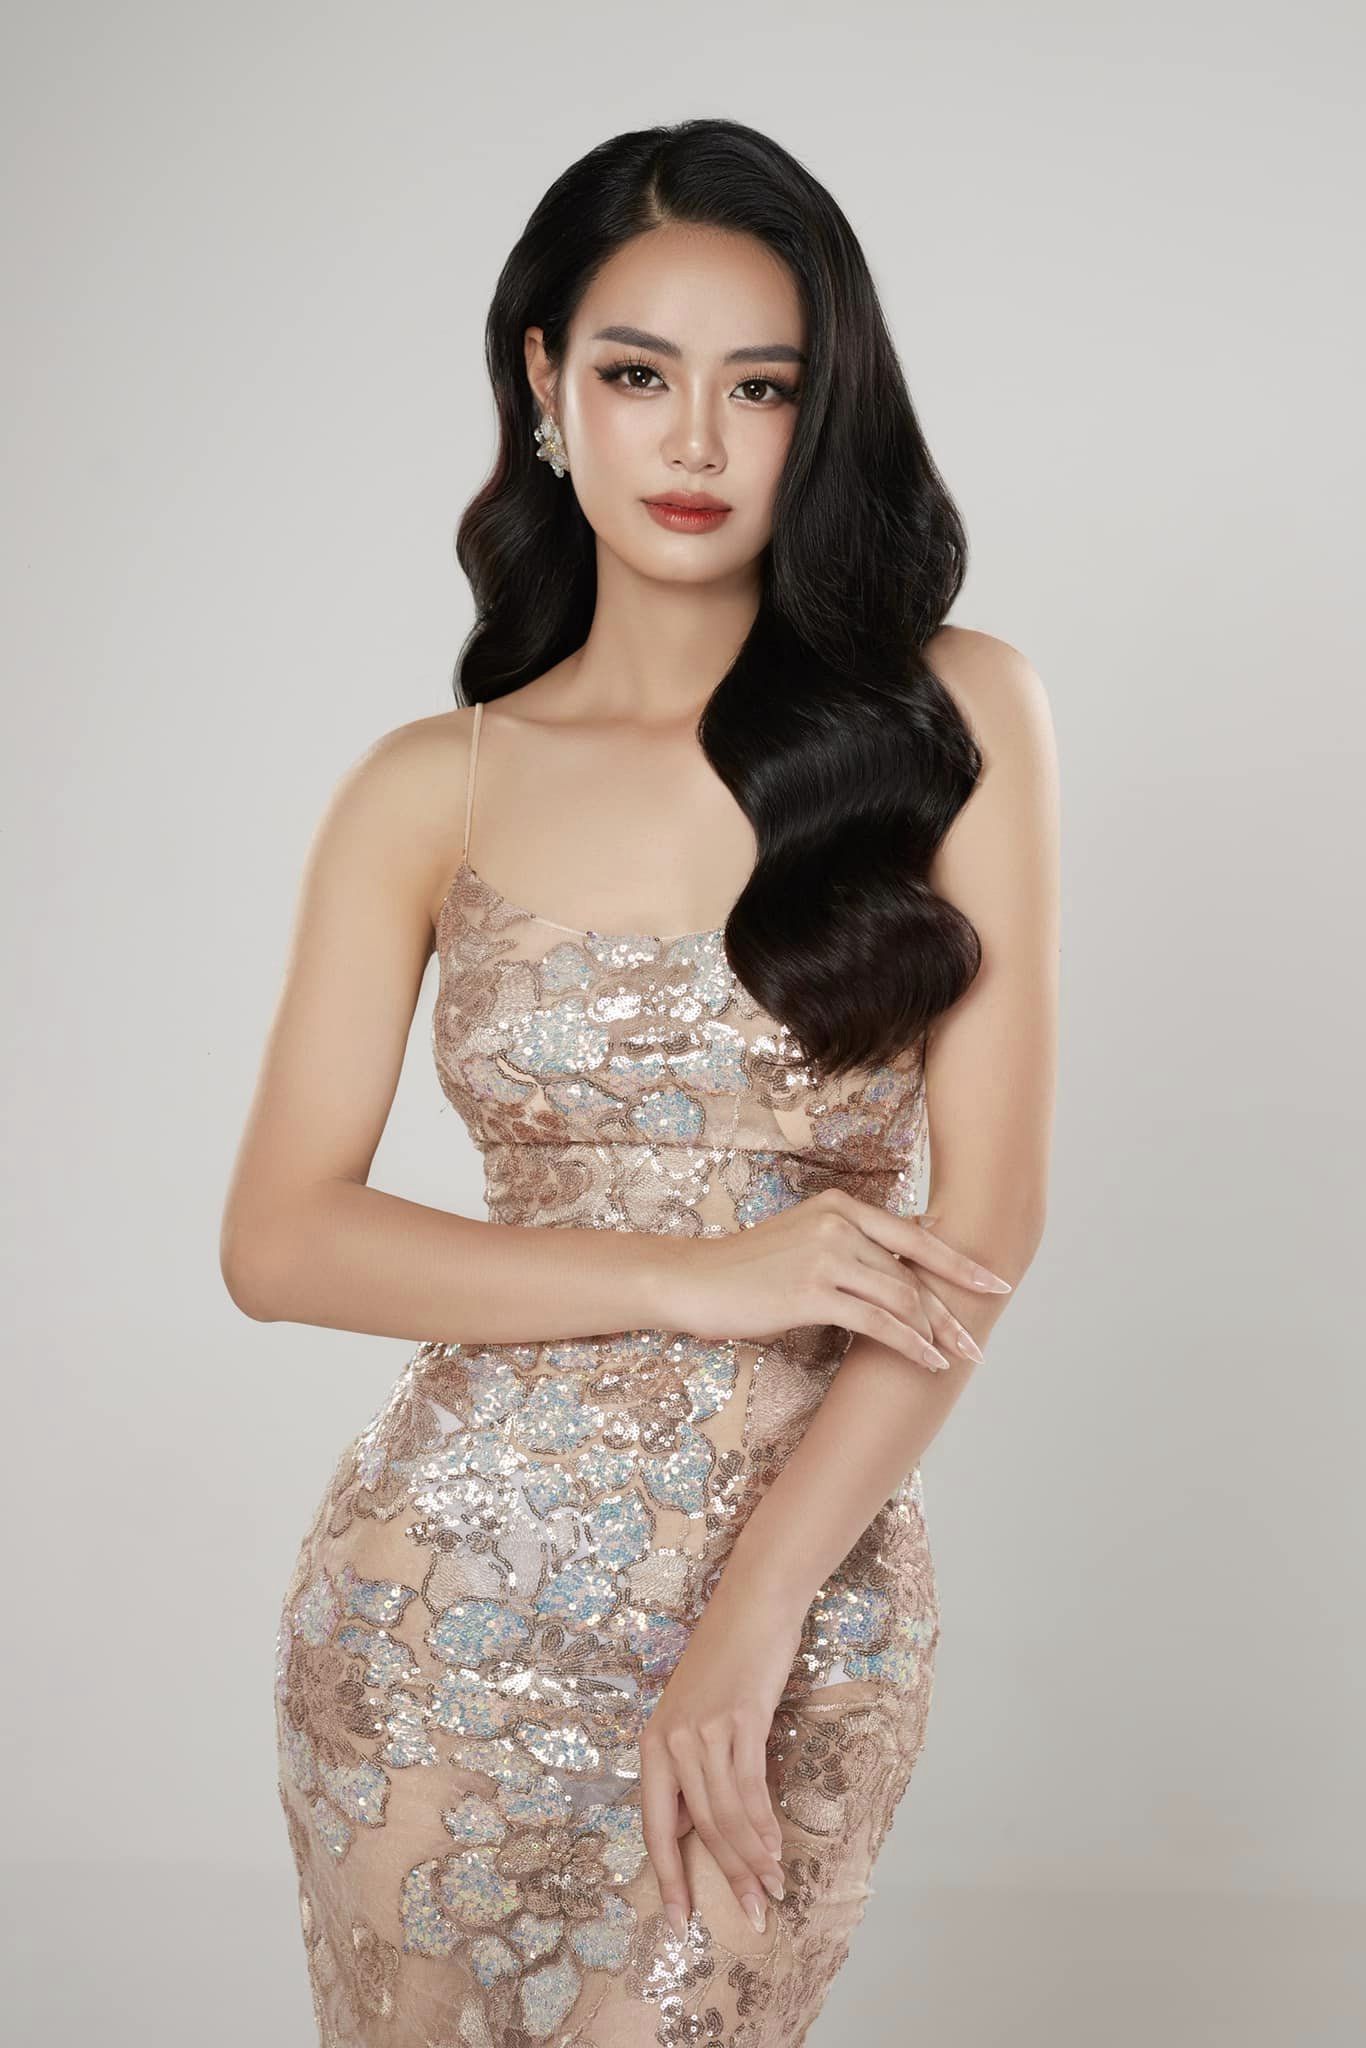 Nhan sắc xinh đẹp, quyến rũ của nữ thủ môn cao 1,76 m vào chung khảo Miss World Vietnam 2023 - Ảnh 1.